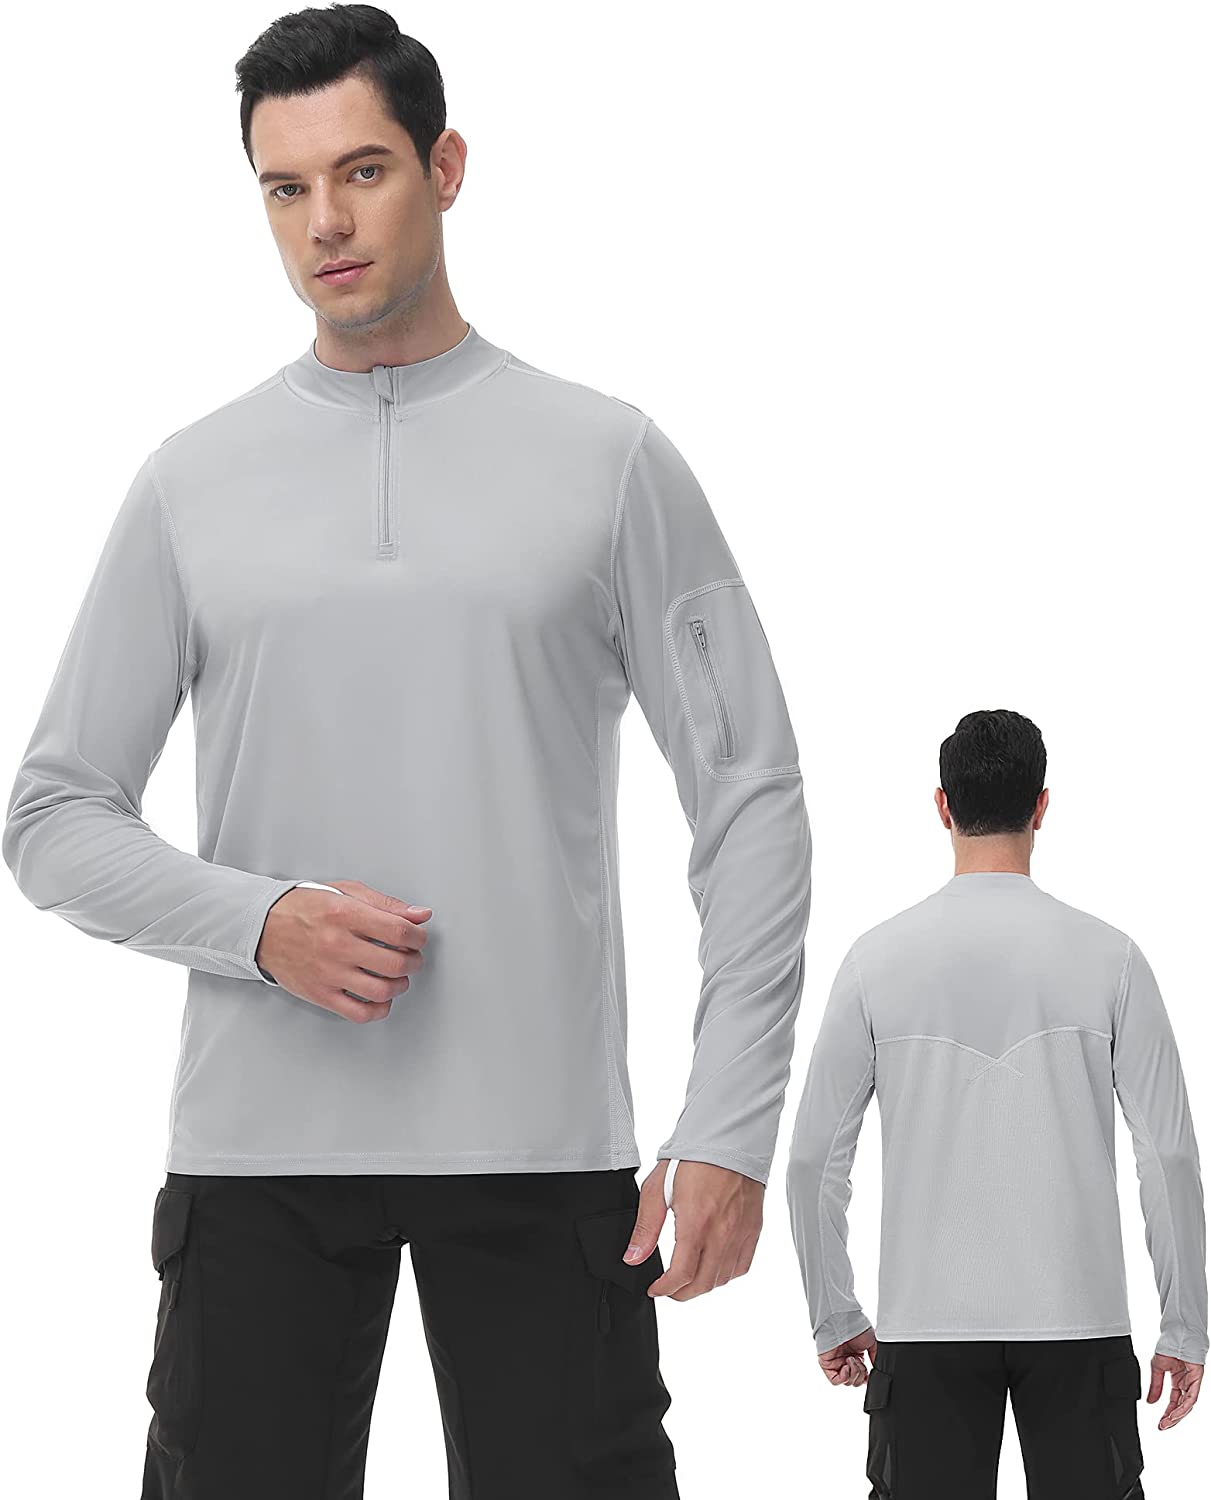 Roadbox Men UPF 50+ Long Sleeve Fishing Shirt UV Sun Protection